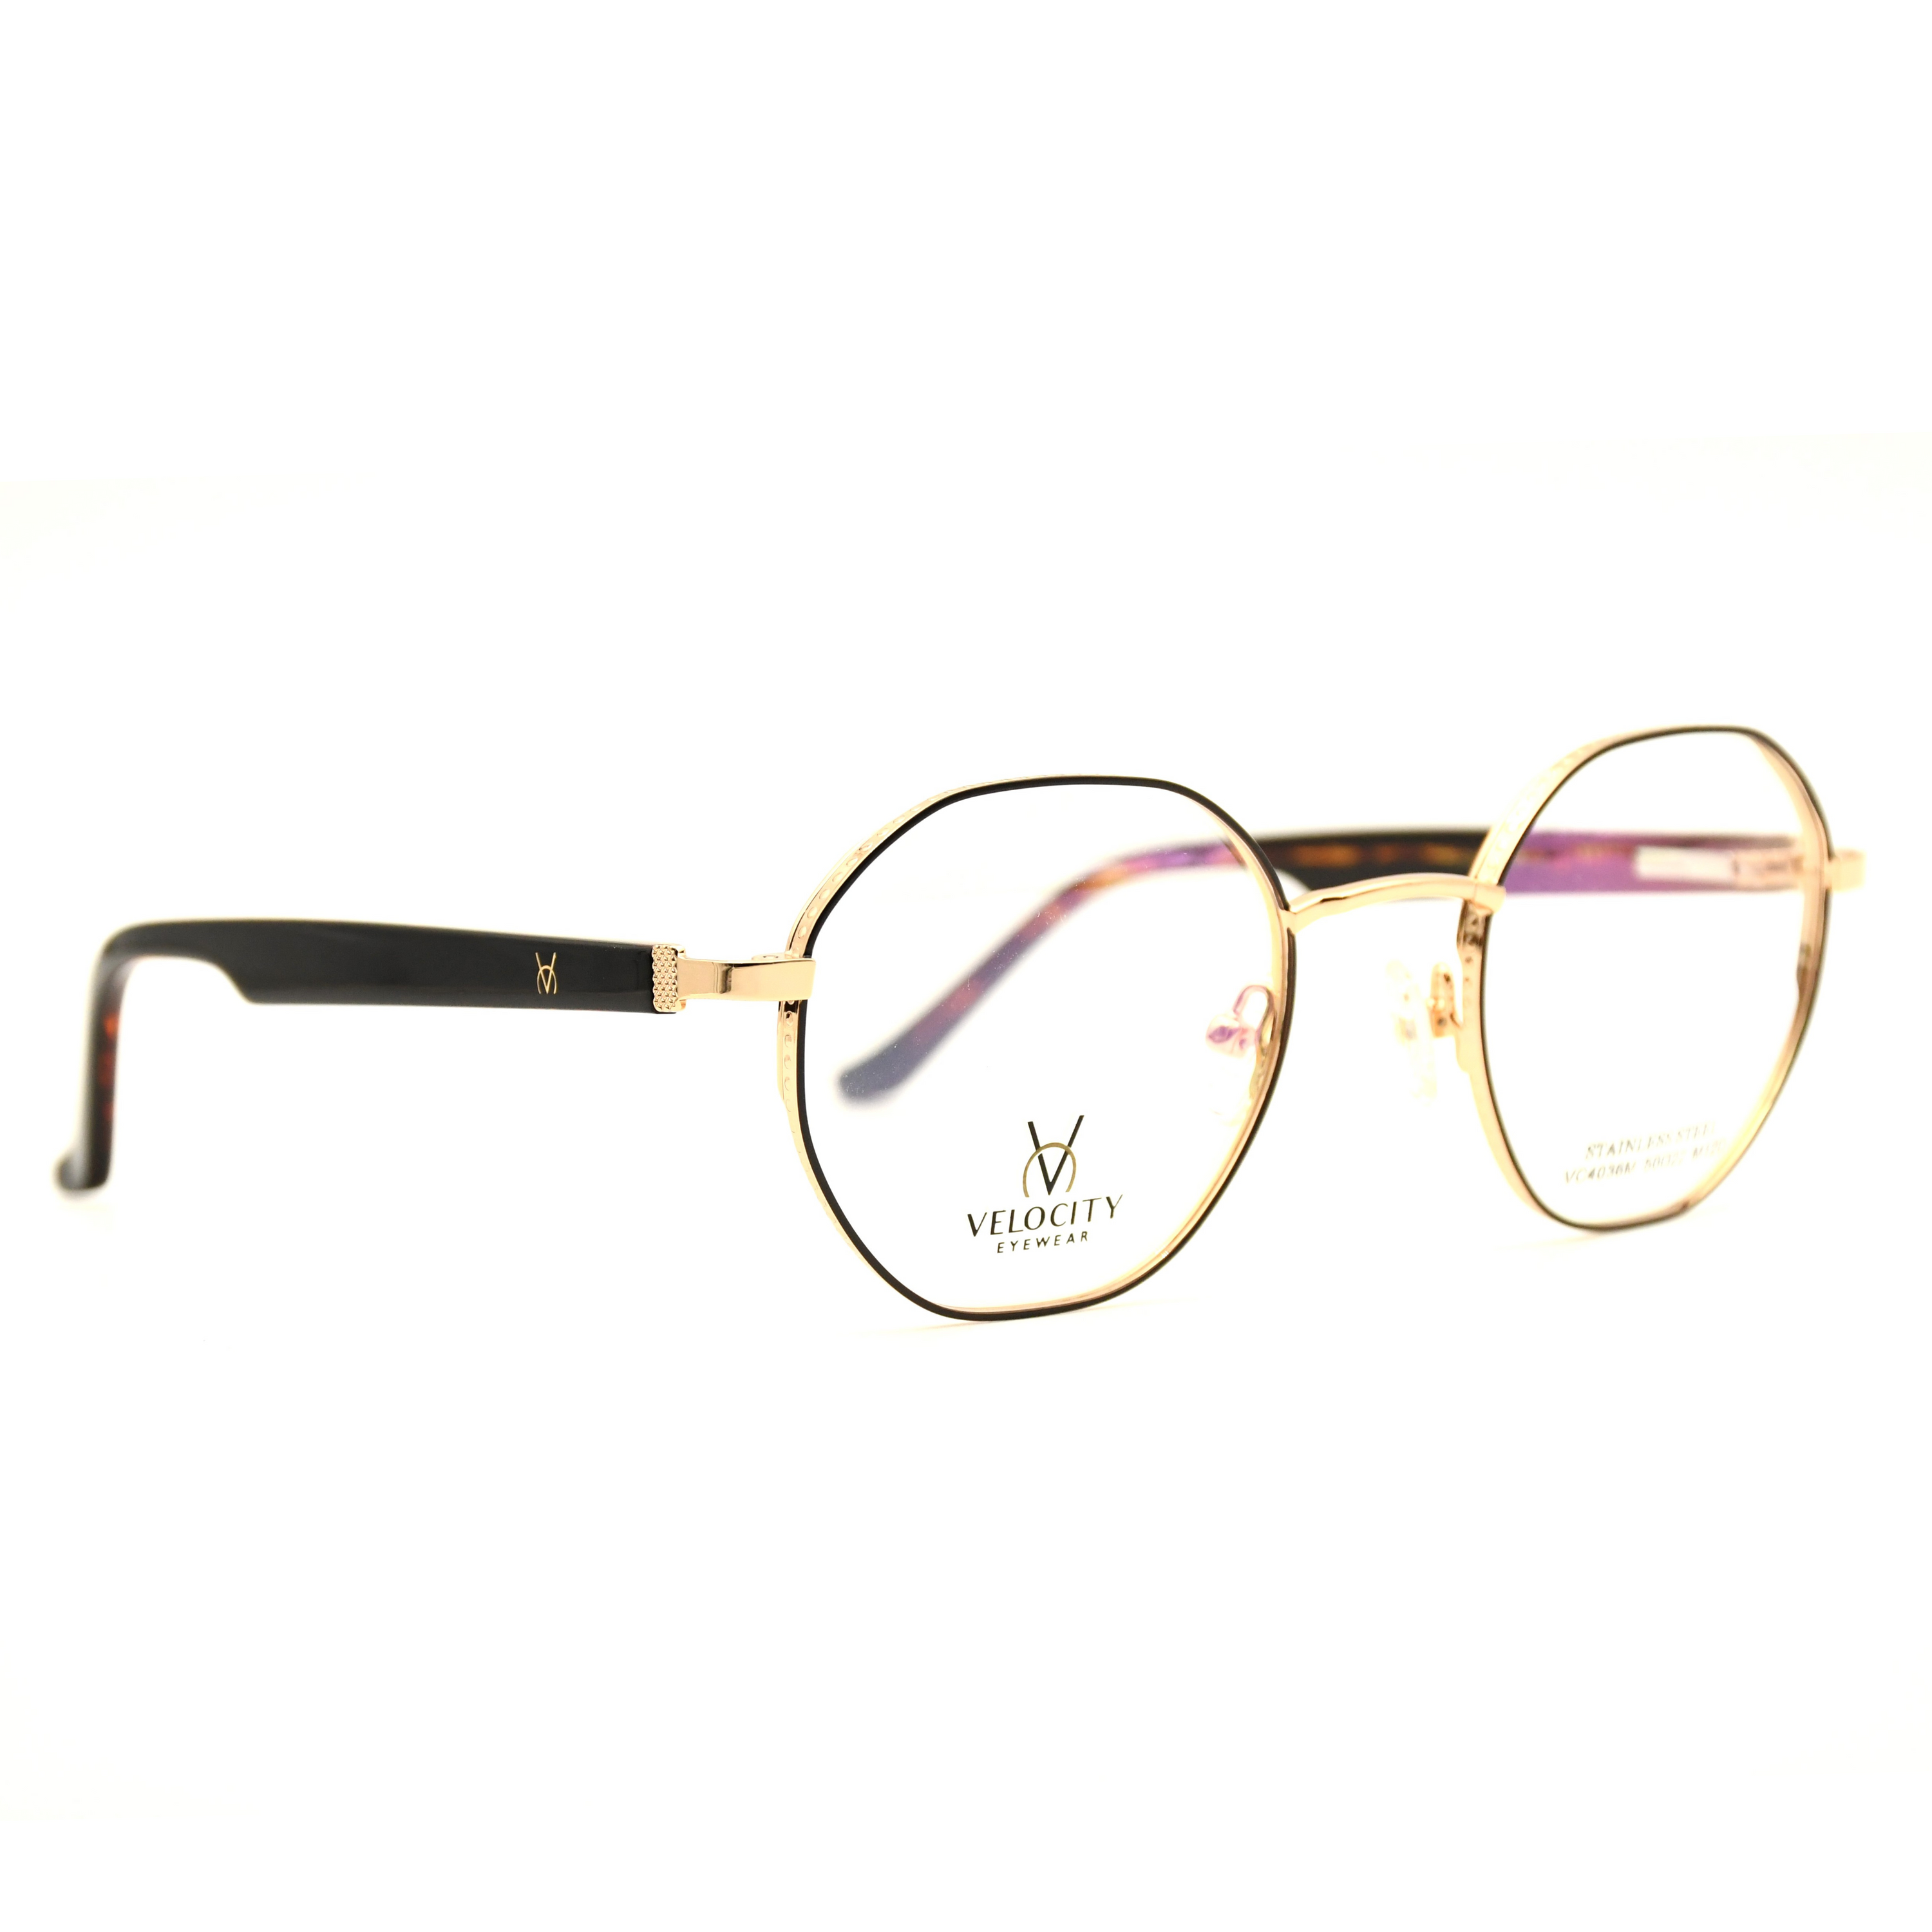 Velocity Full Rim Eyeglasses - 4036-M12D